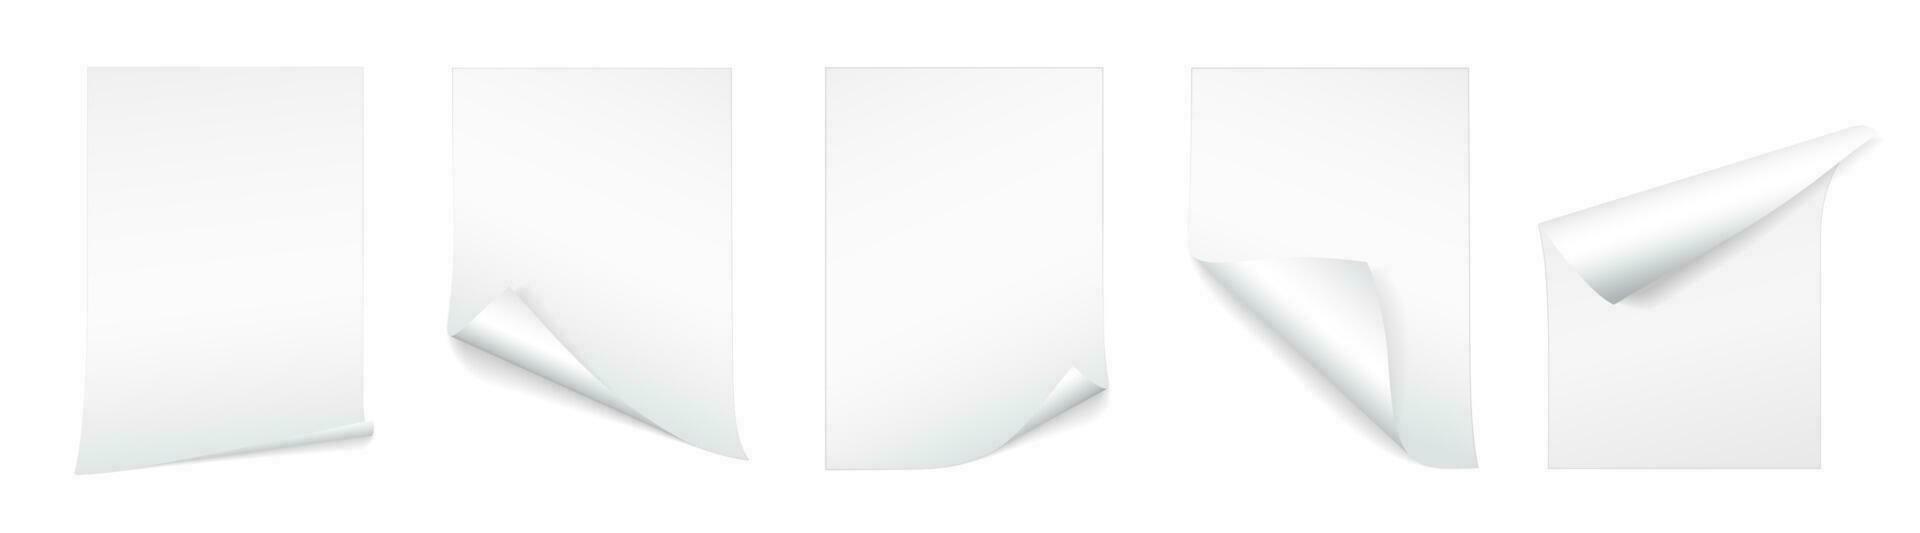 vuoto a4 foglio di bianca carta con arricciato angolo e ombra, modello per il tuo design. impostare. vettore illustrazione